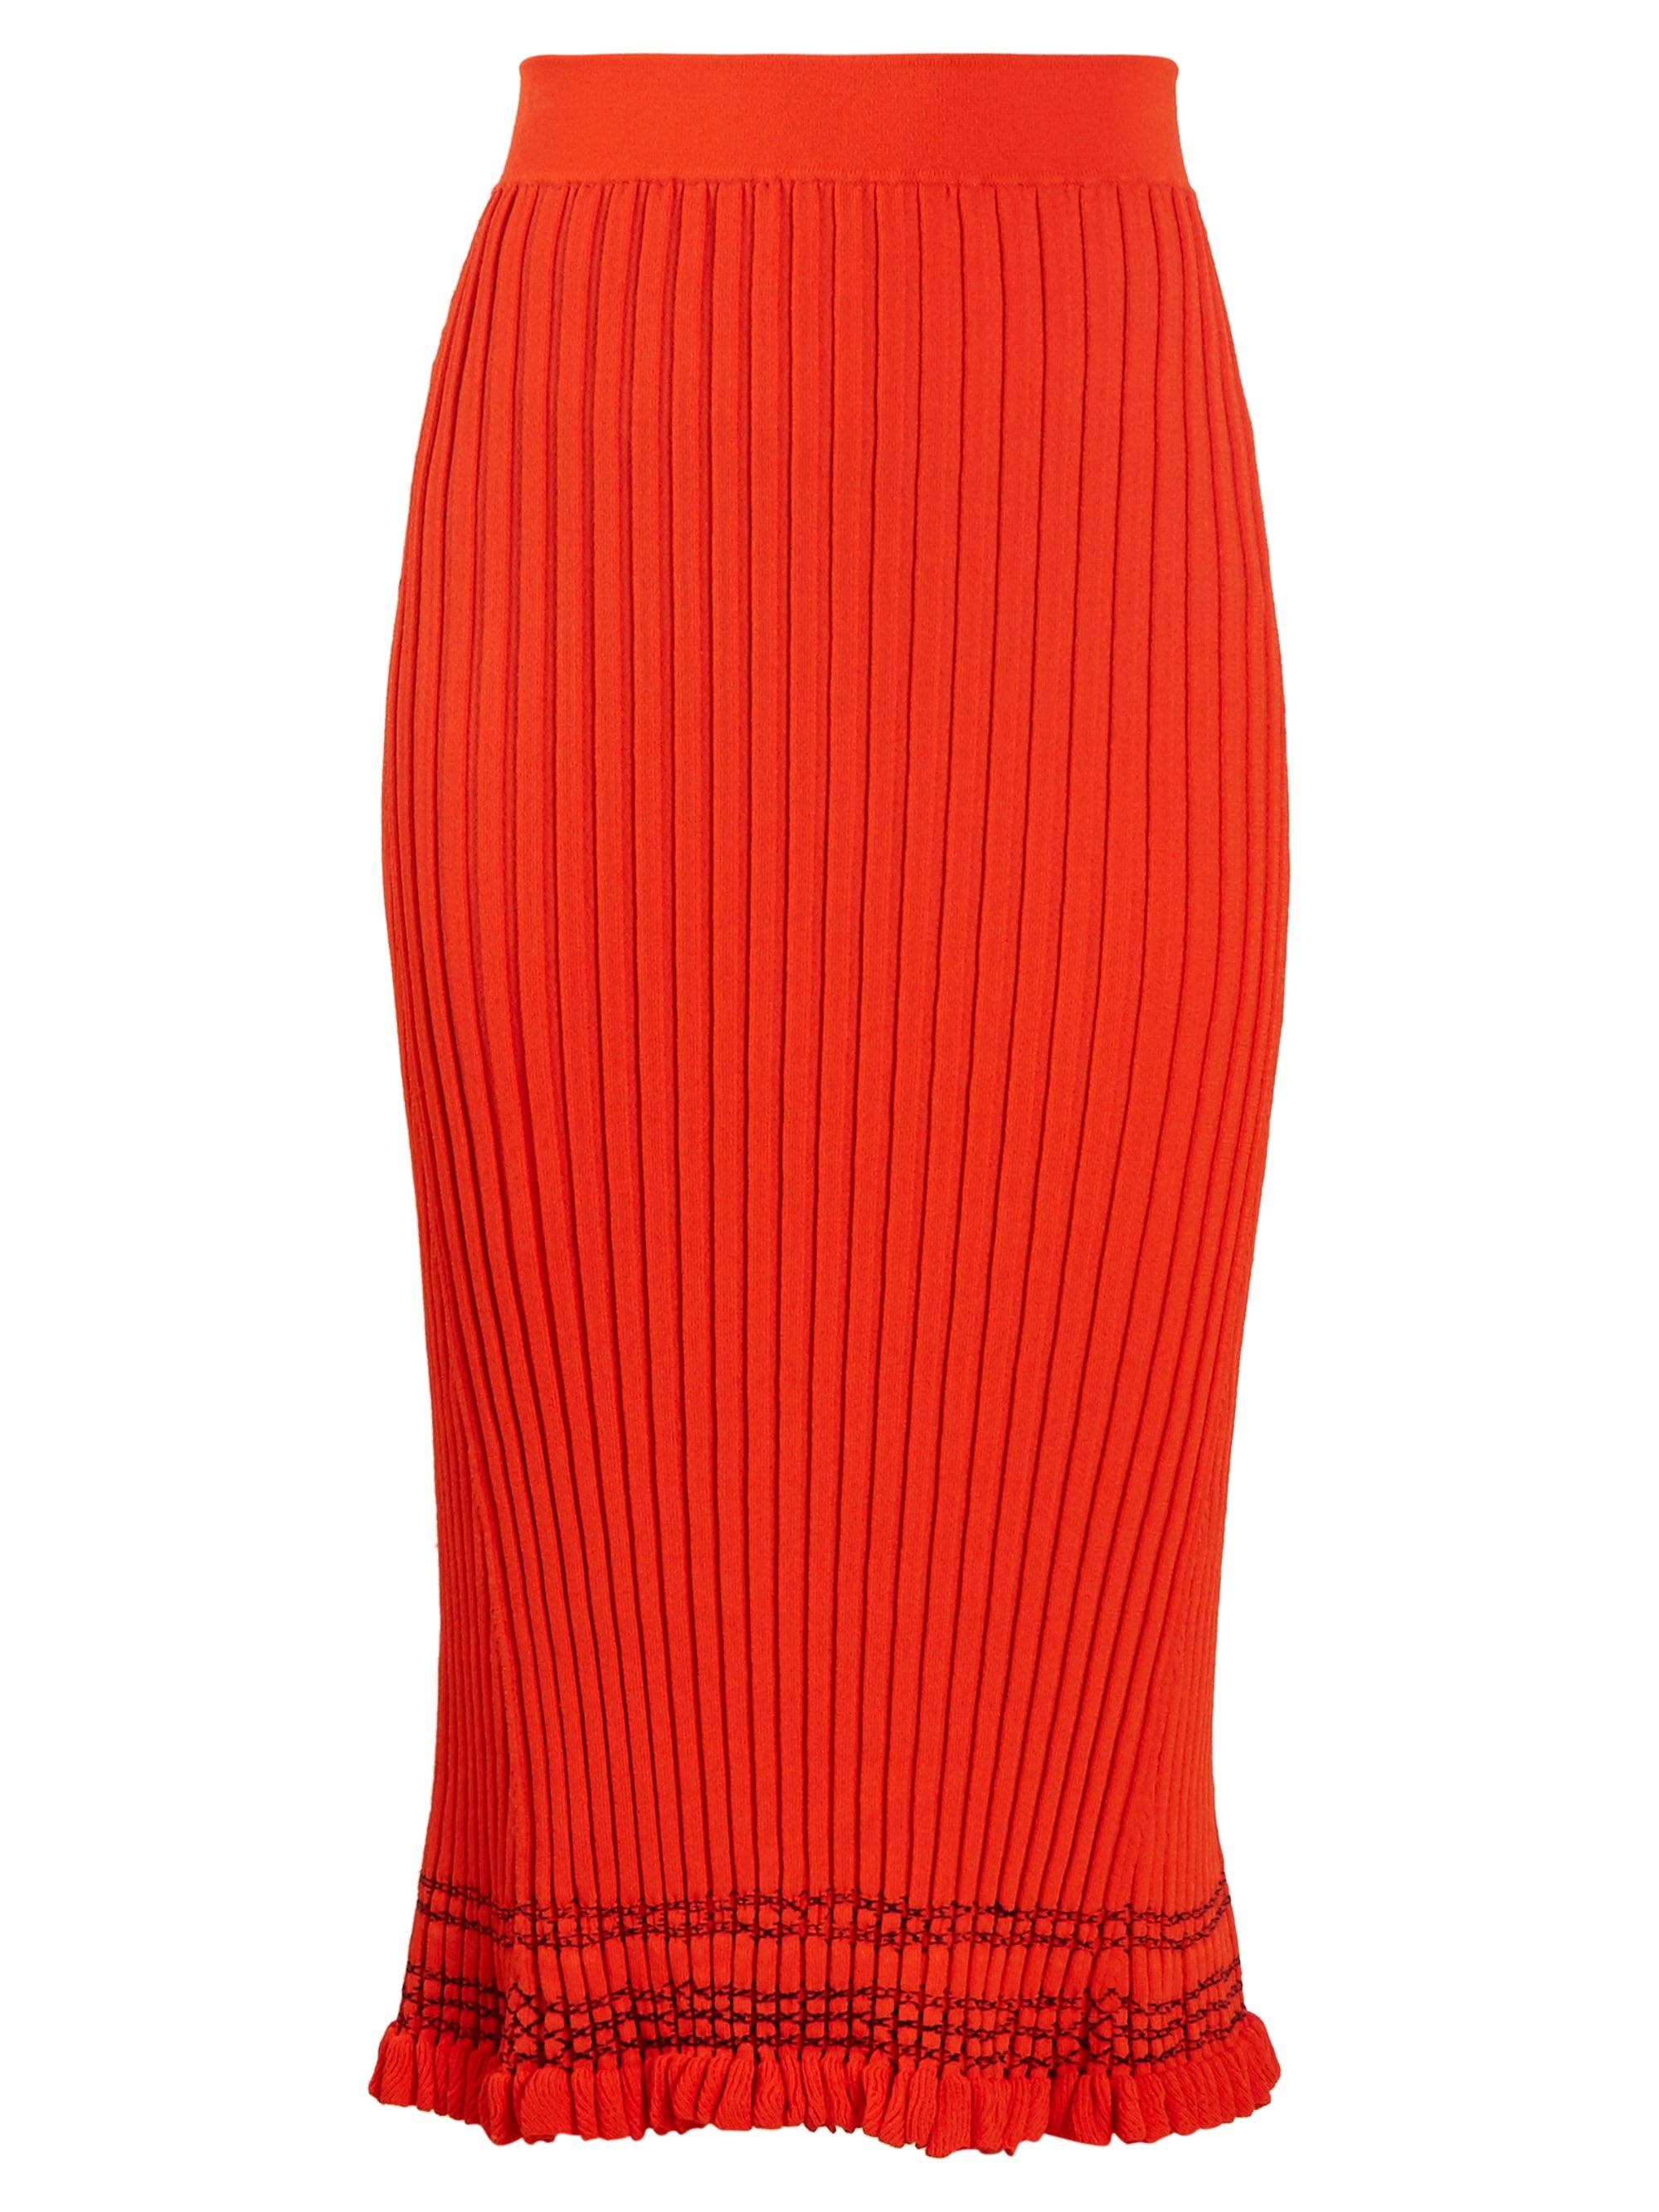 Altuzarra Gwendolyn Ribbed-knit Midi Skirt in Orange - Lyst